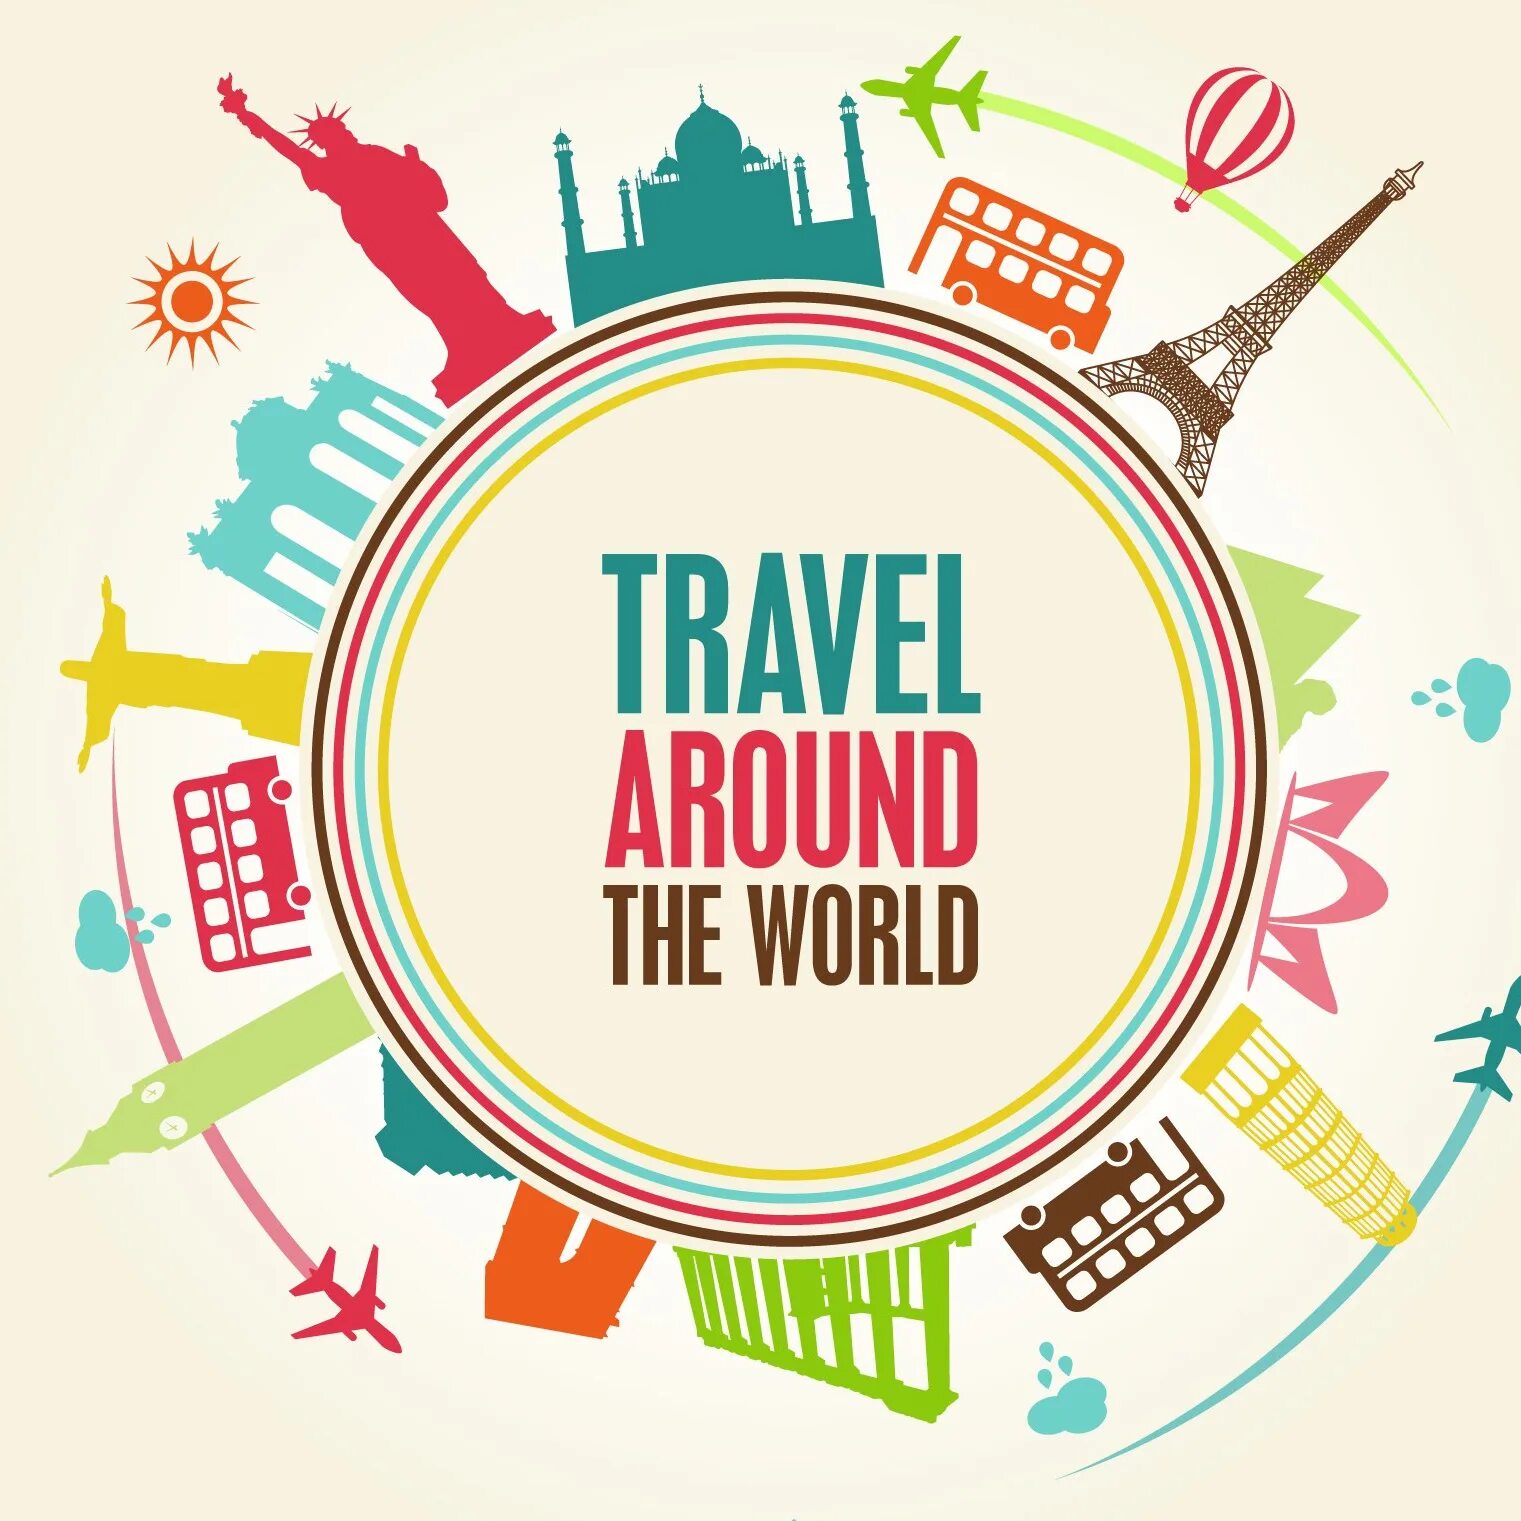 We love world. Логотип путешествия. Вокруг света вектор. Travel around the World вектор. Путешествие вокруг света.